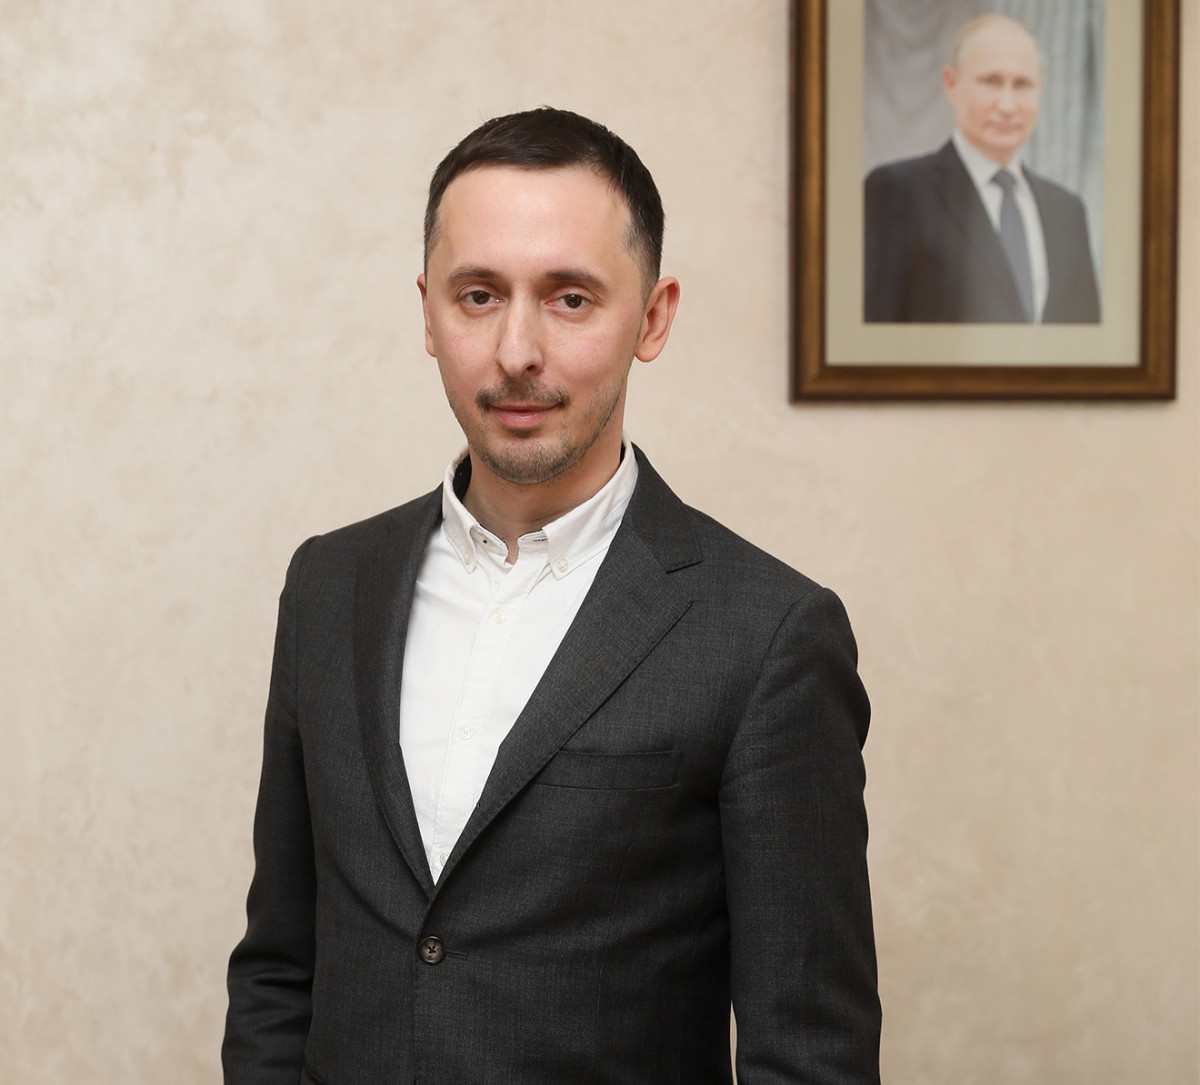 Давид Мелик-Гусейнов ответит на вопросы нижегородцев в прямом эфире в Instagram